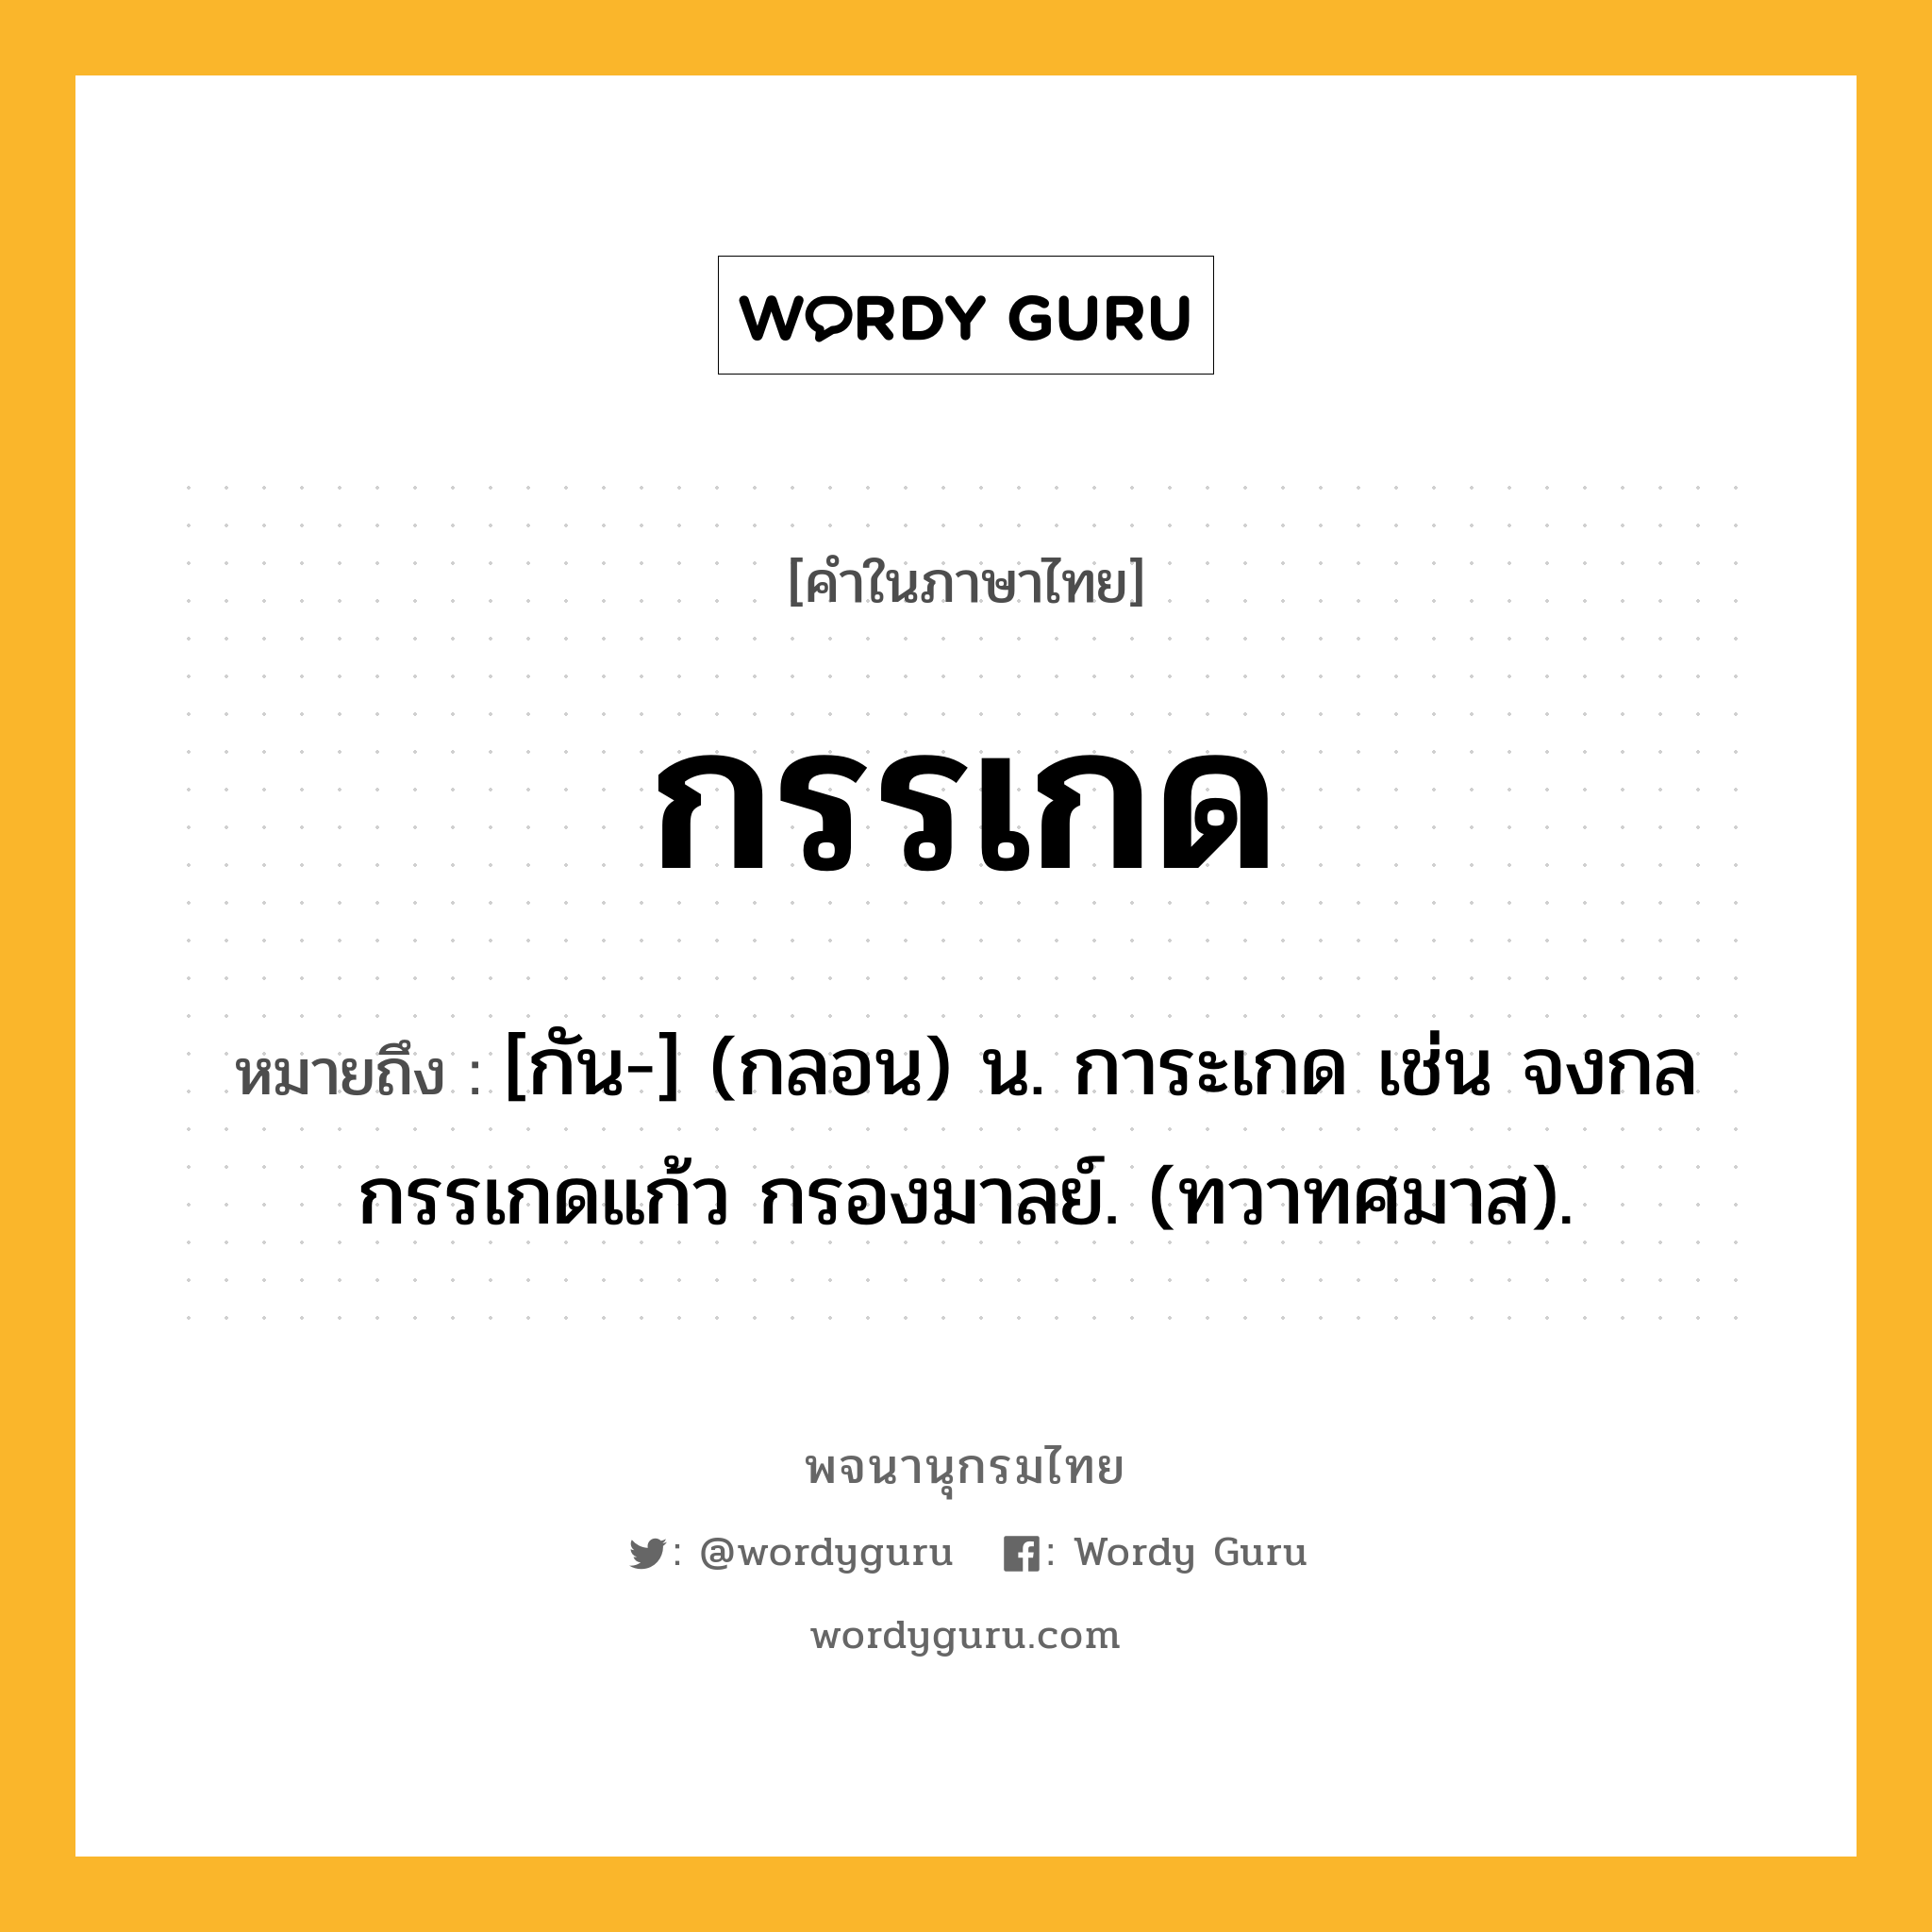 กรรเกด ความหมาย หมายถึงอะไร?, คำในภาษาไทย กรรเกด หมายถึง [กัน-] (กลอน) น. การะเกด เช่น จงกลกรรเกดแก้ว กรองมาลย์. (ทวาทศมาส).